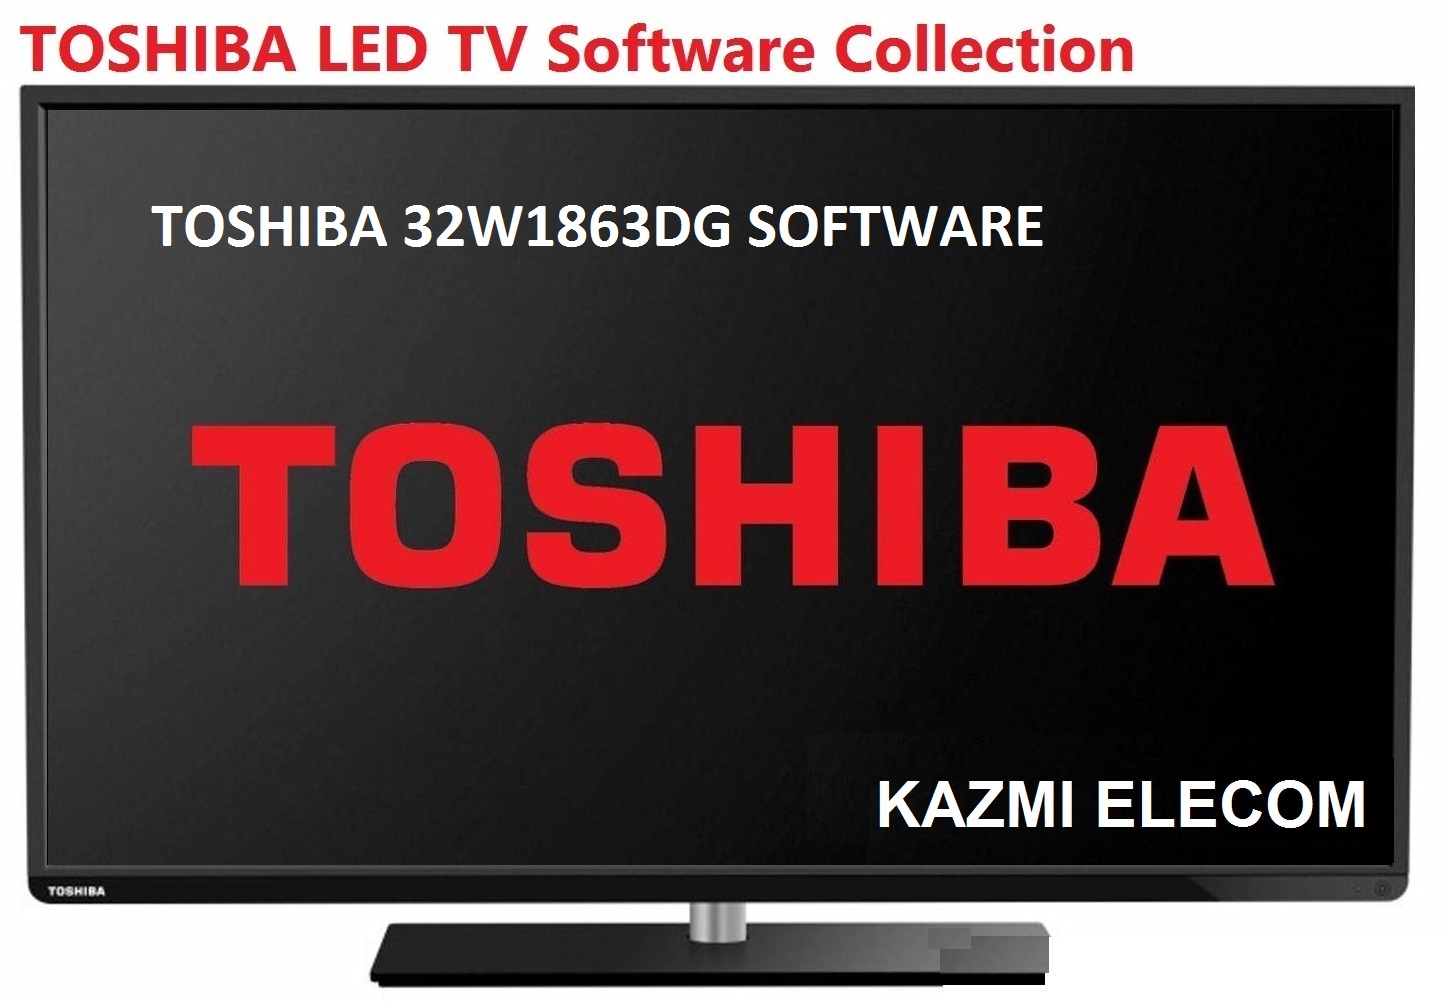 Toshiba 32W1863Dg